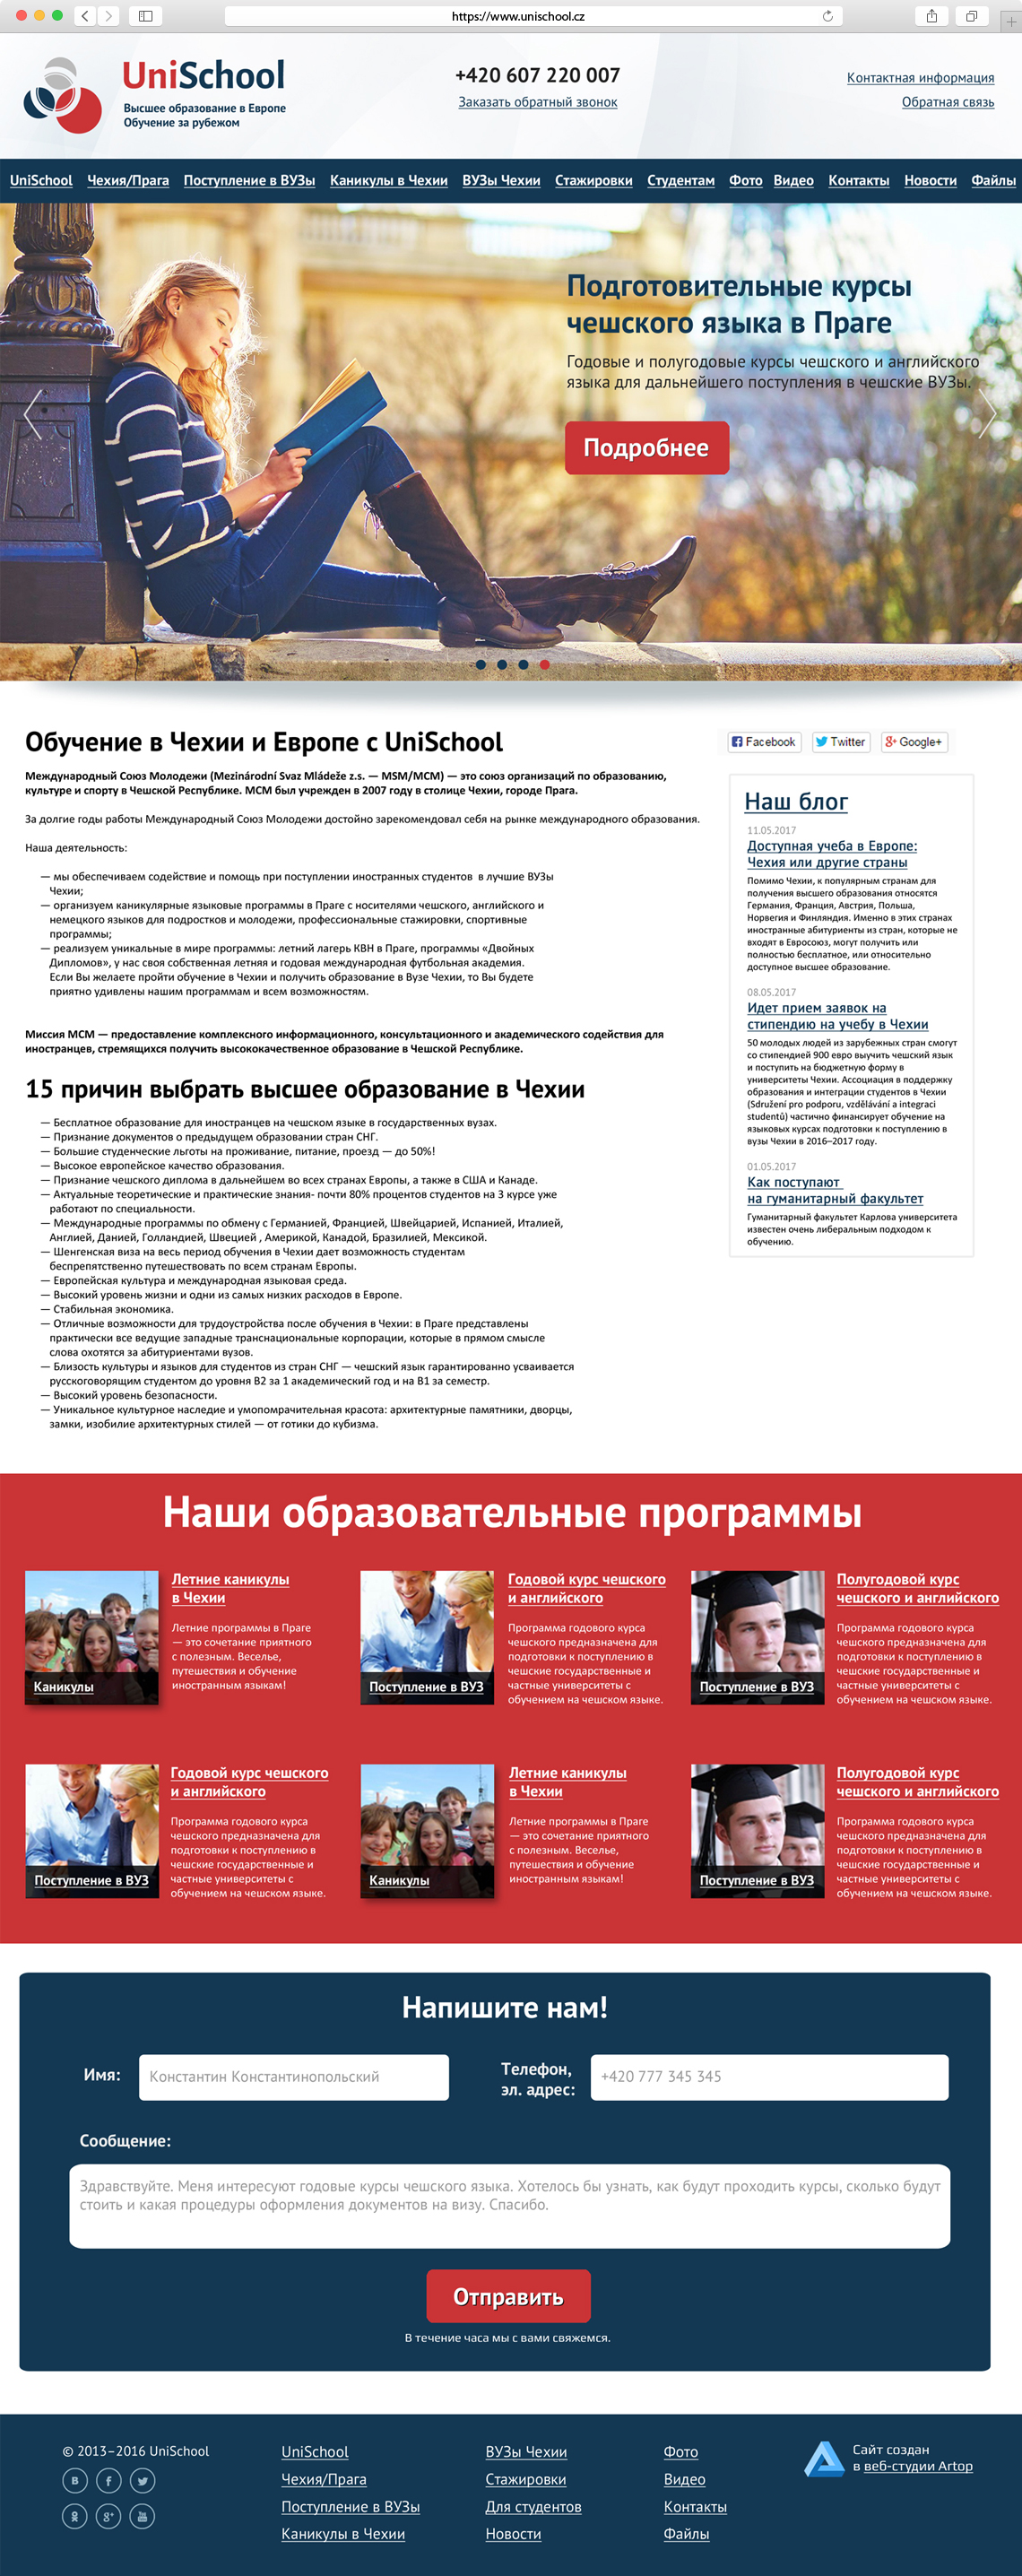 Главная страница www.unischool.cz